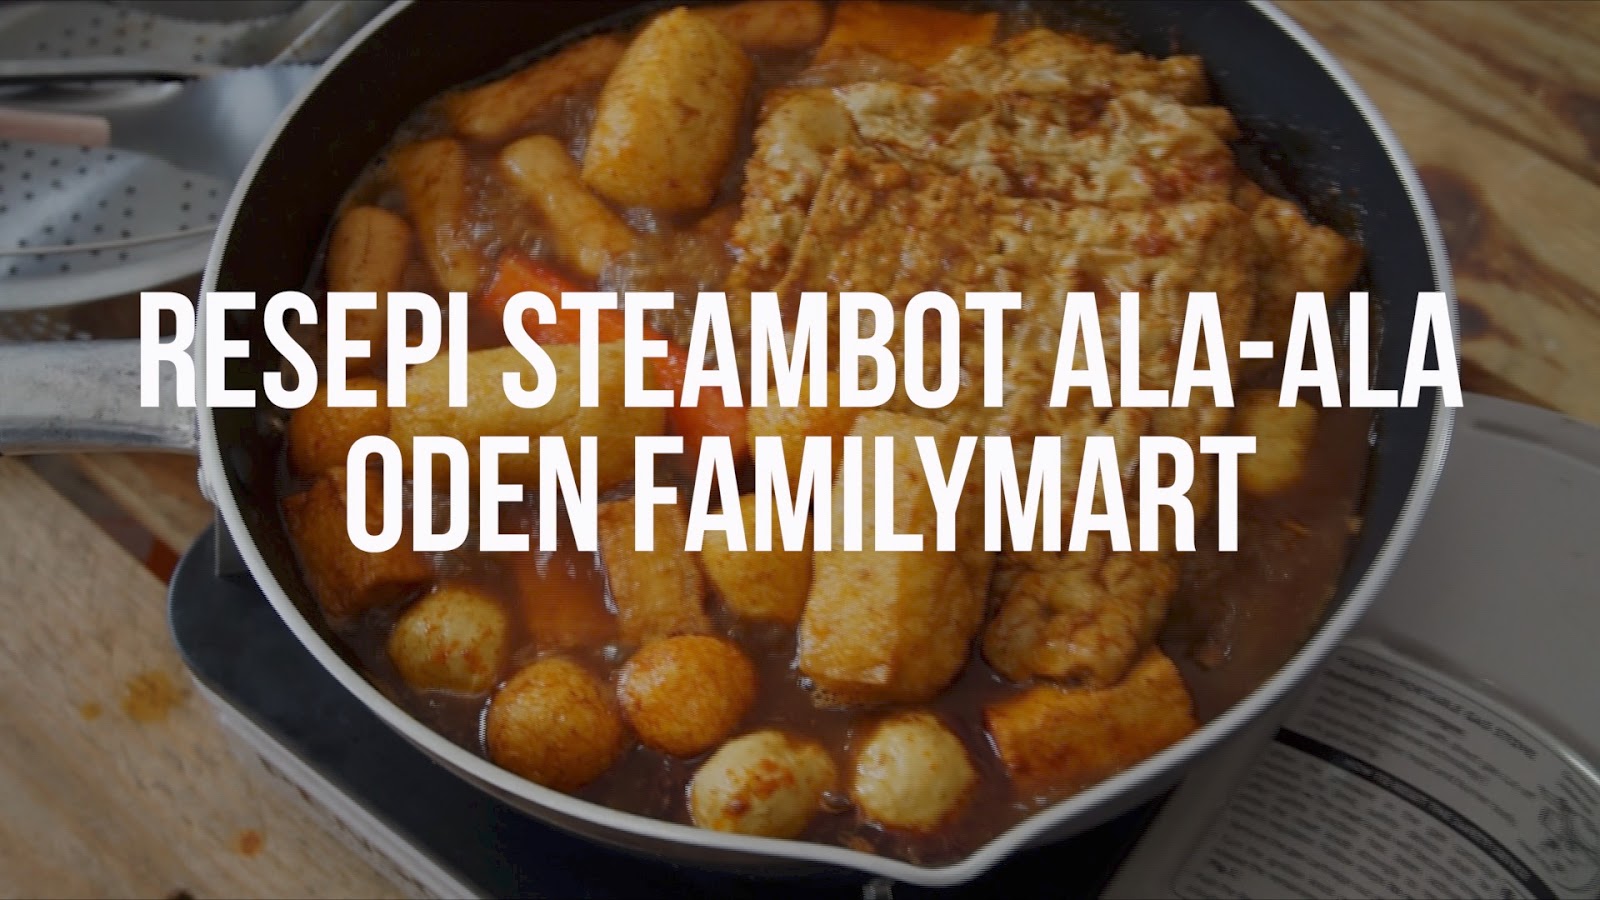 Resepi Oden Steambot Sedap Dan Mudah Ala-Ala FamilyMart